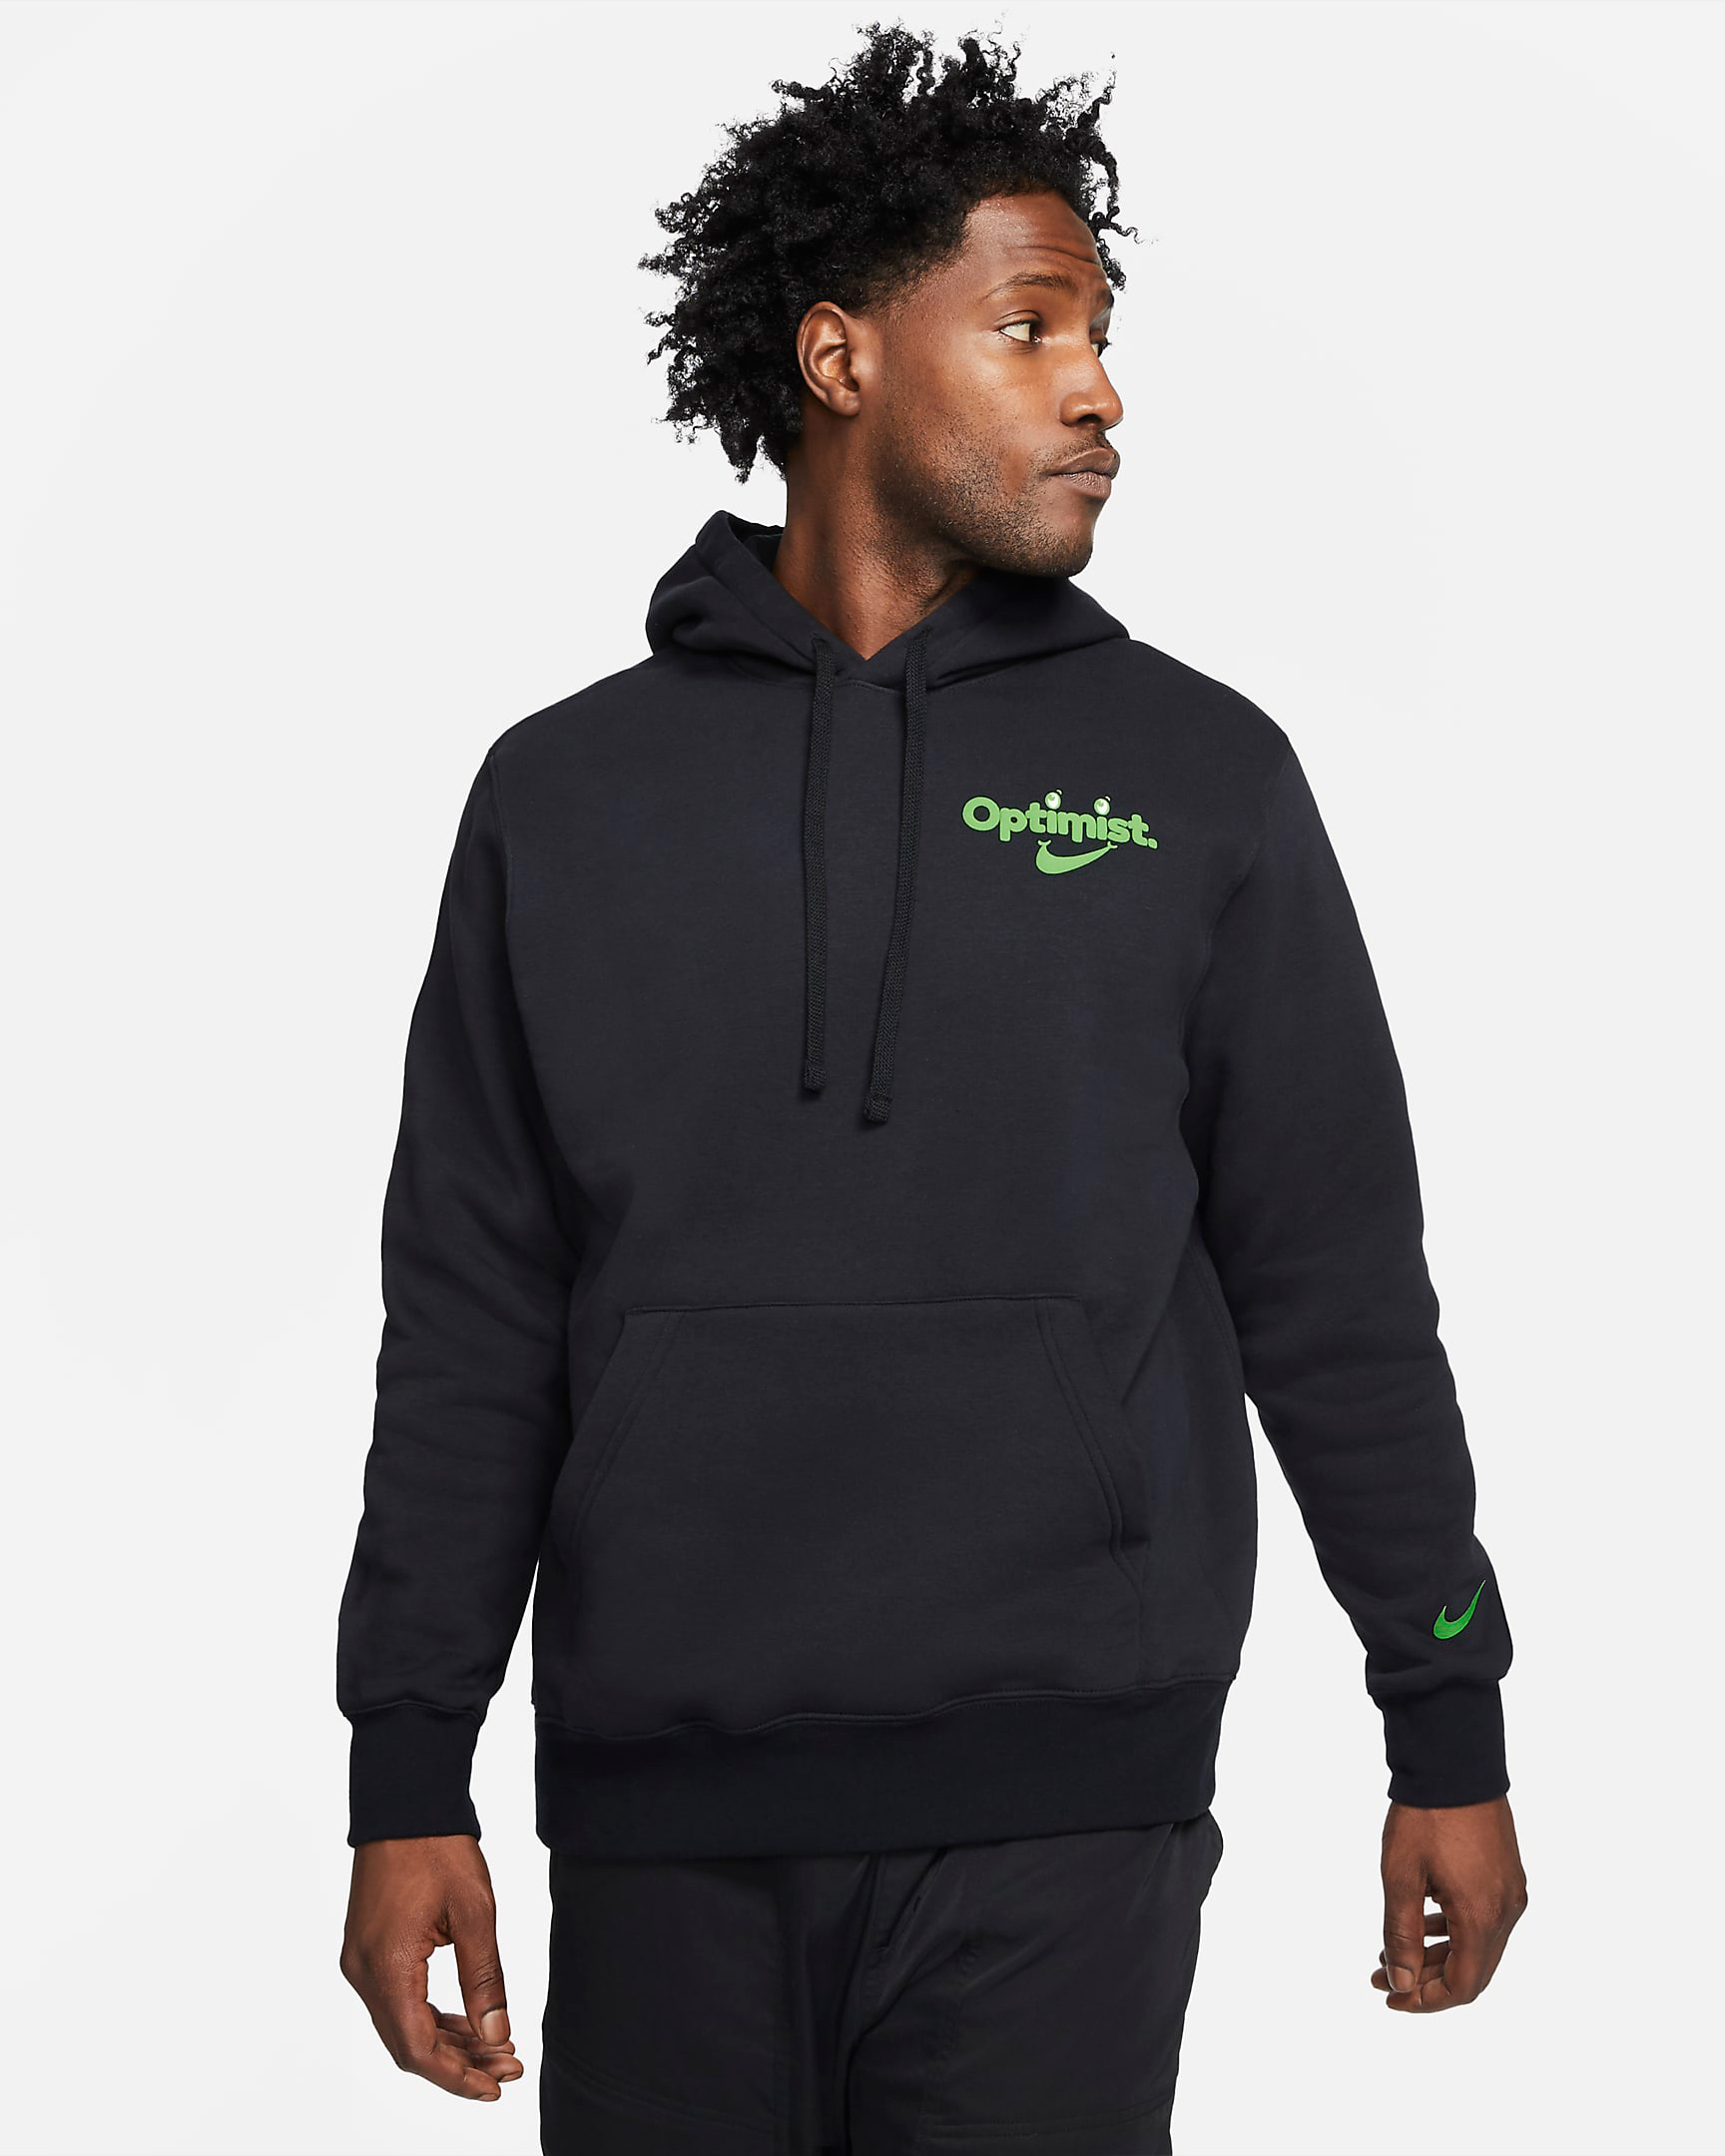 nike-sportswear-optimist-hoodie-black-green-1